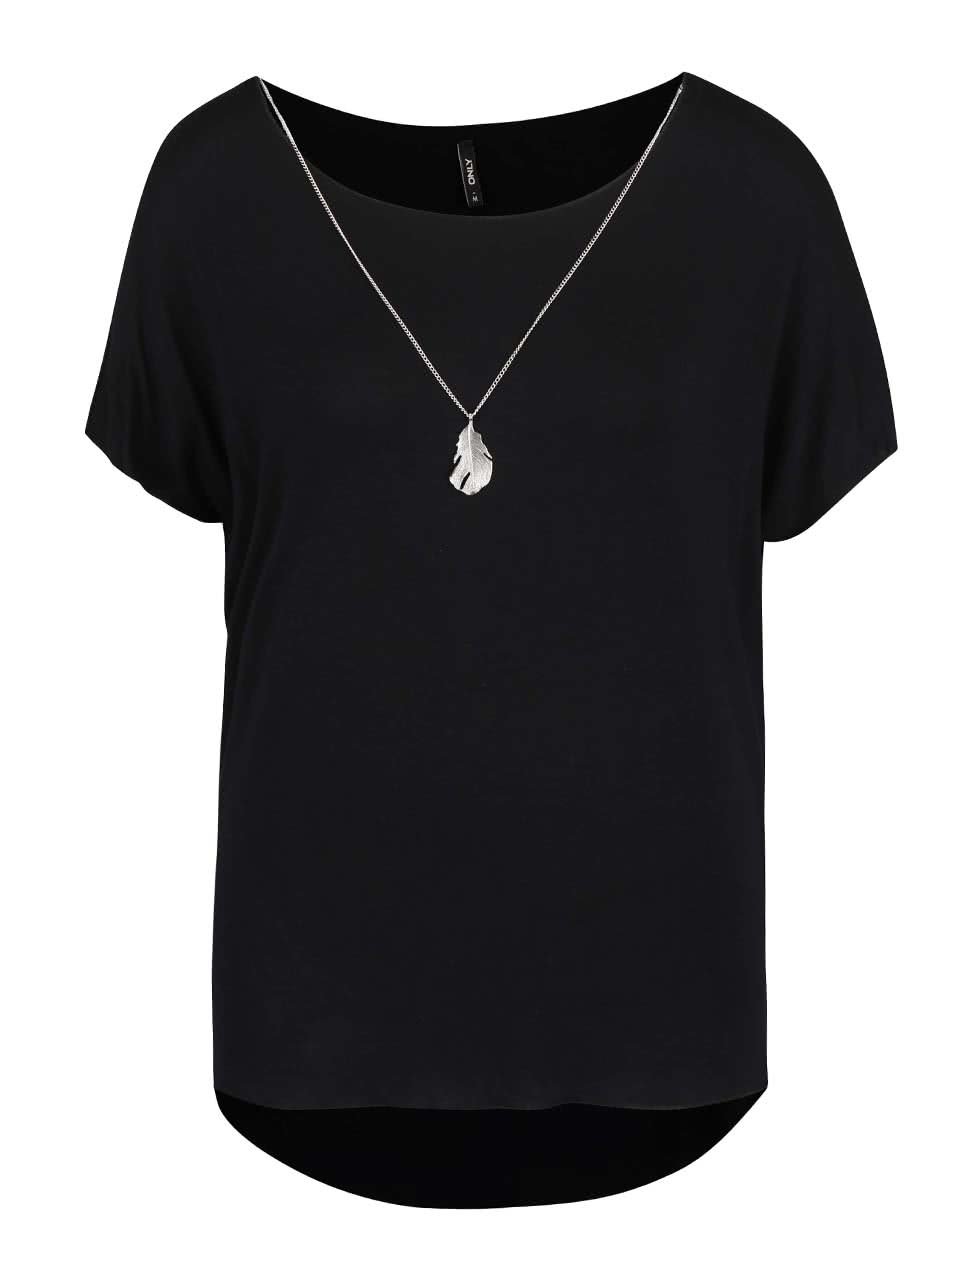 Černé tričko s ozdobným pírkem na řetízku ve stříbrné barvě ONLY Sylvia